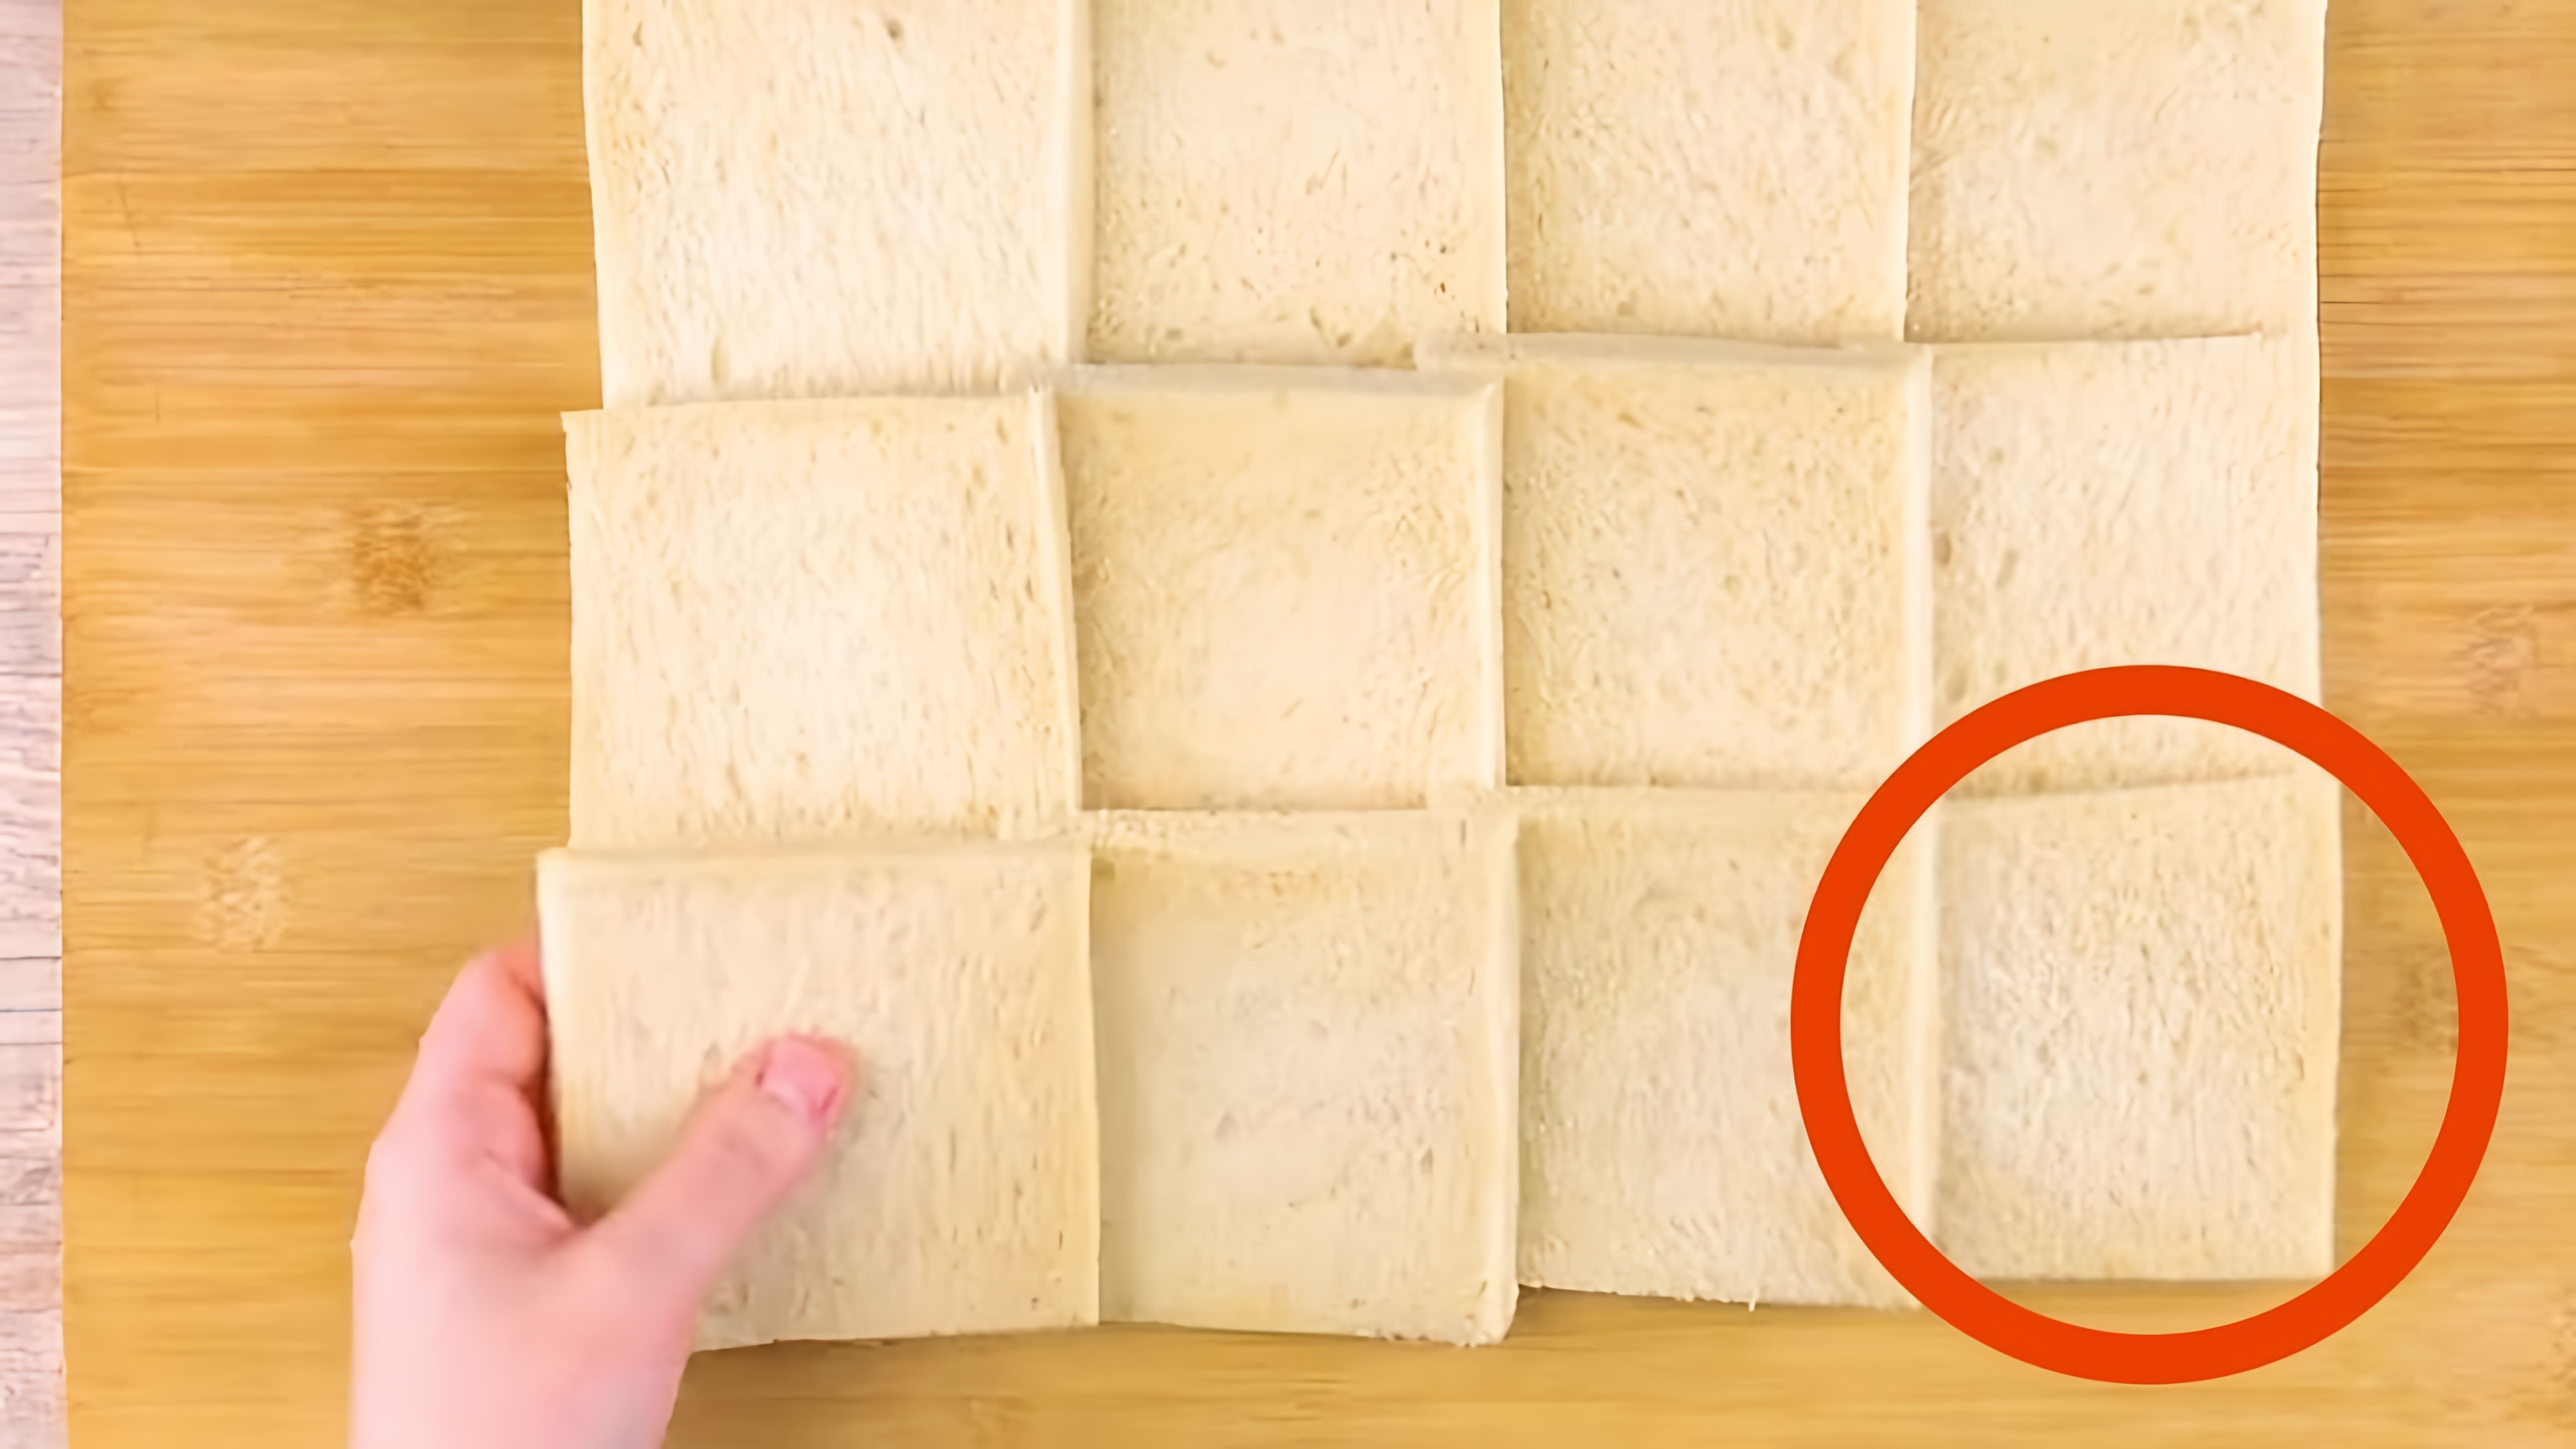 В этом видео-ролике демонстрируется процесс раскатывания 12 ломтиков хлеба скалкой